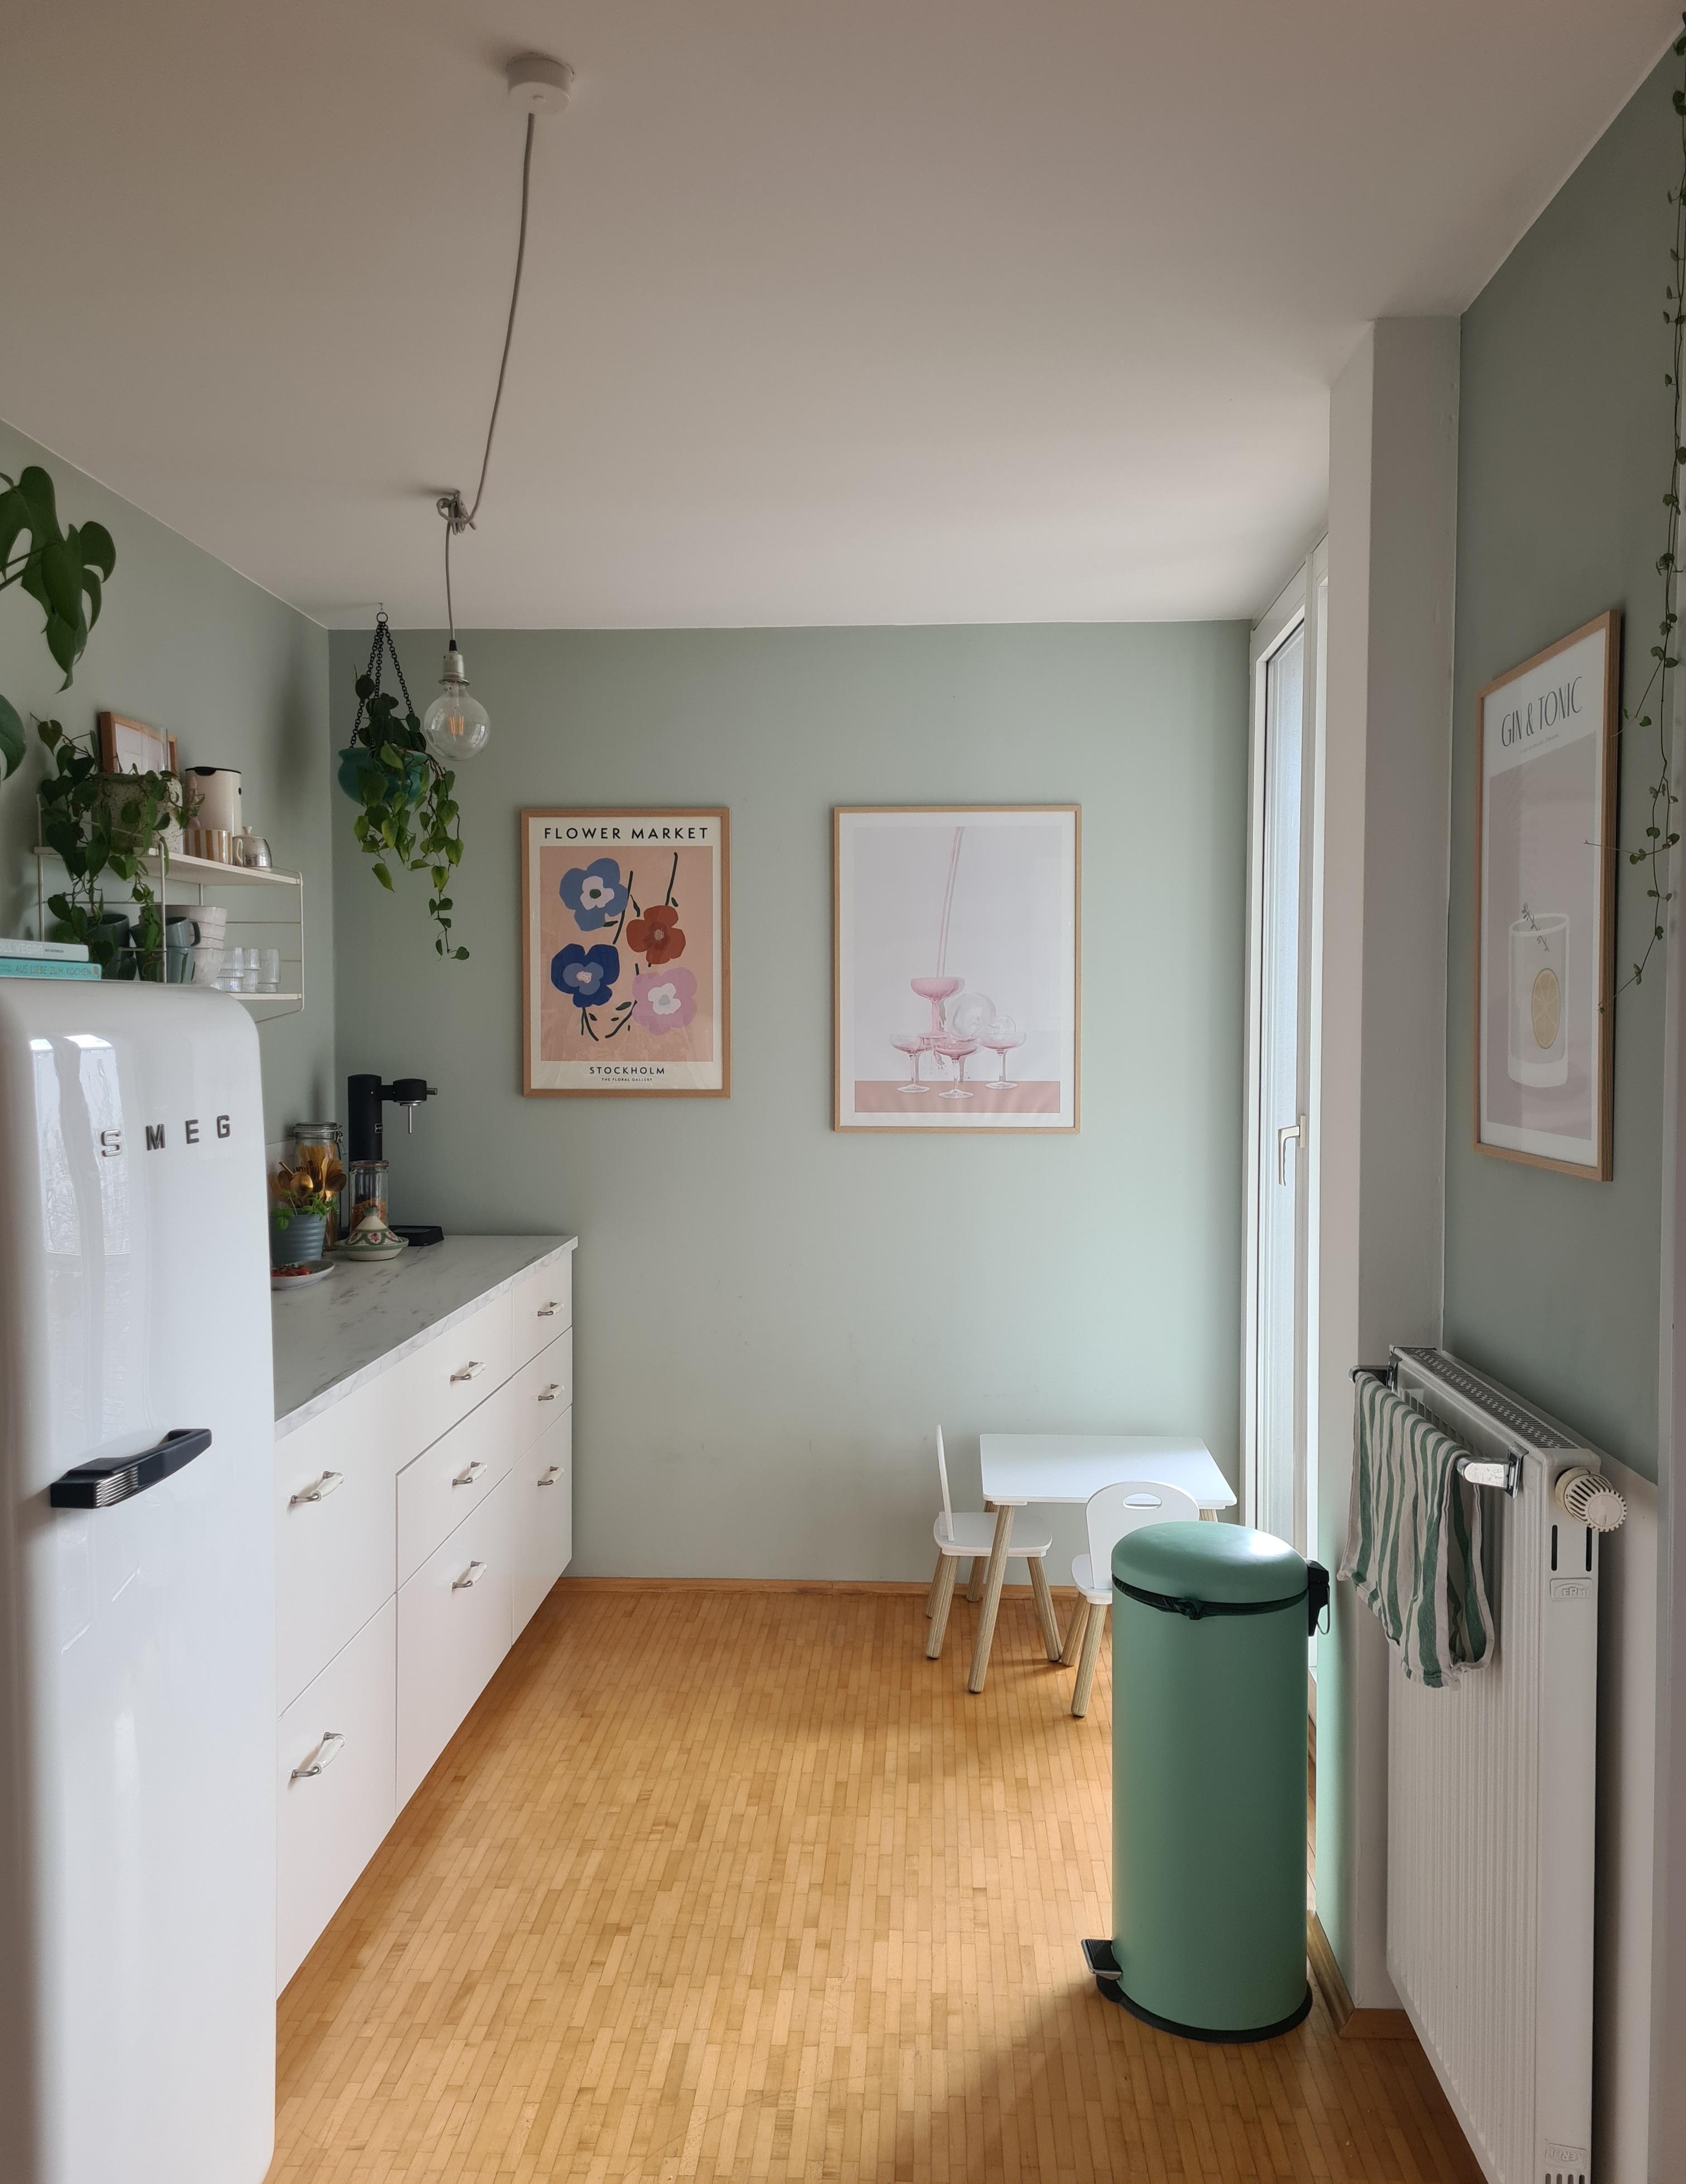 Grün, grün, grün sind alle meine Wände... #kleineküche #wandfarbe #weißeküche #poster #smeg #kühlschrank 